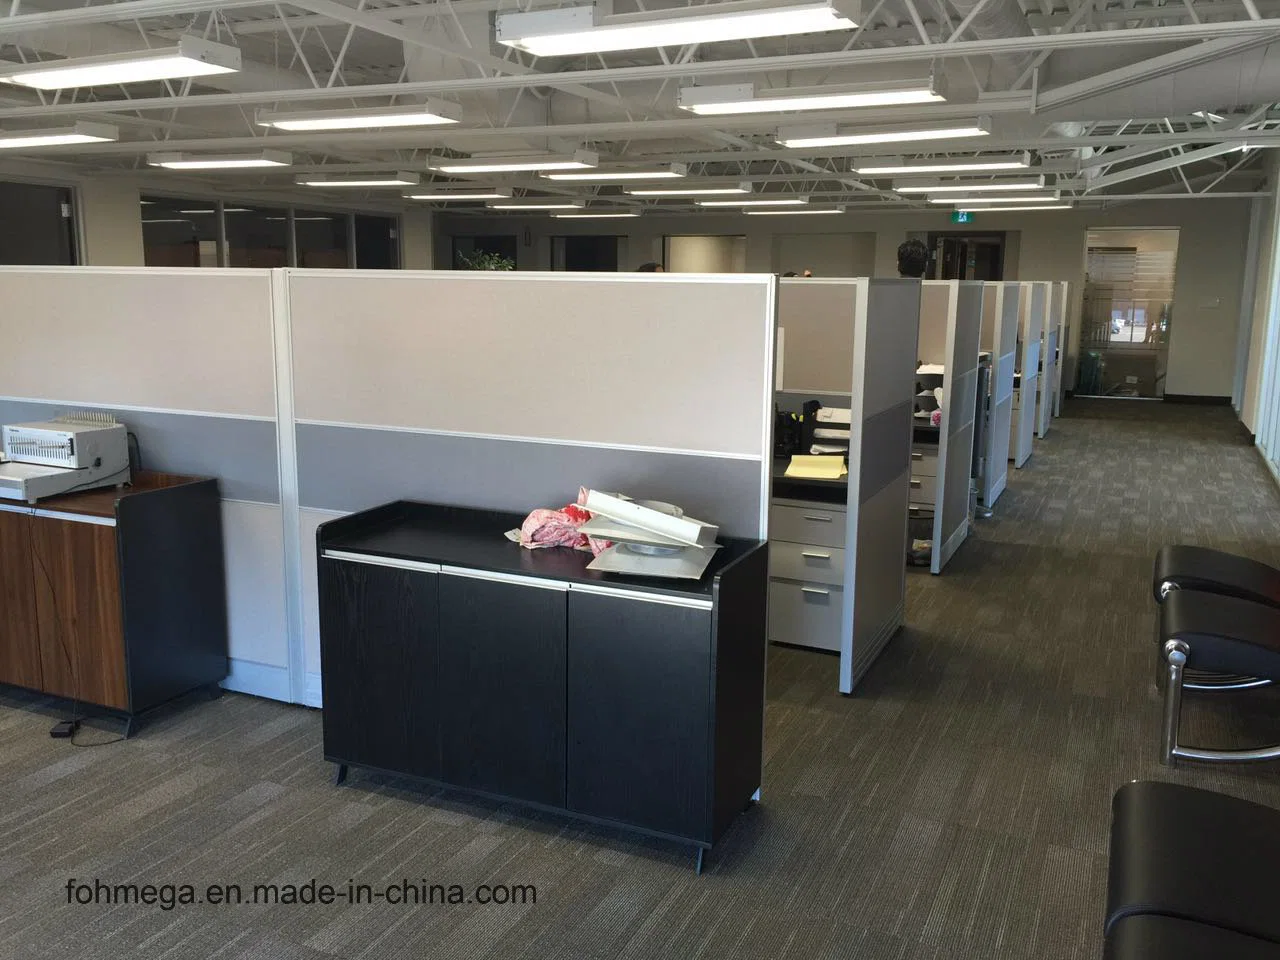 محطة عمل Office المعيارية الخاصة ذات مساحة Office العالية